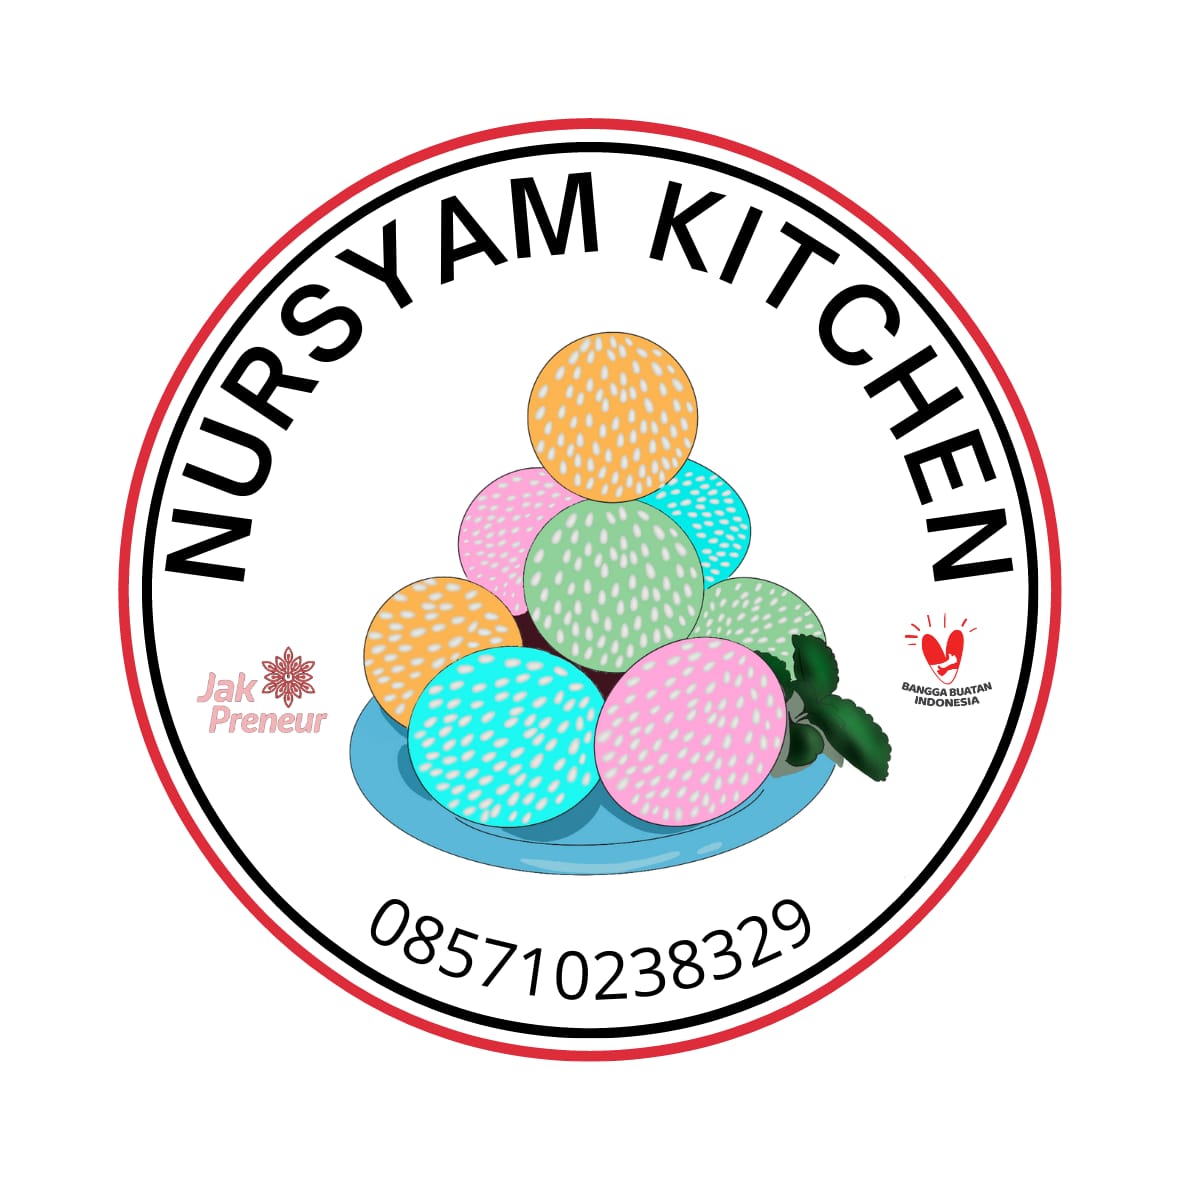 Snack Box Nursyam